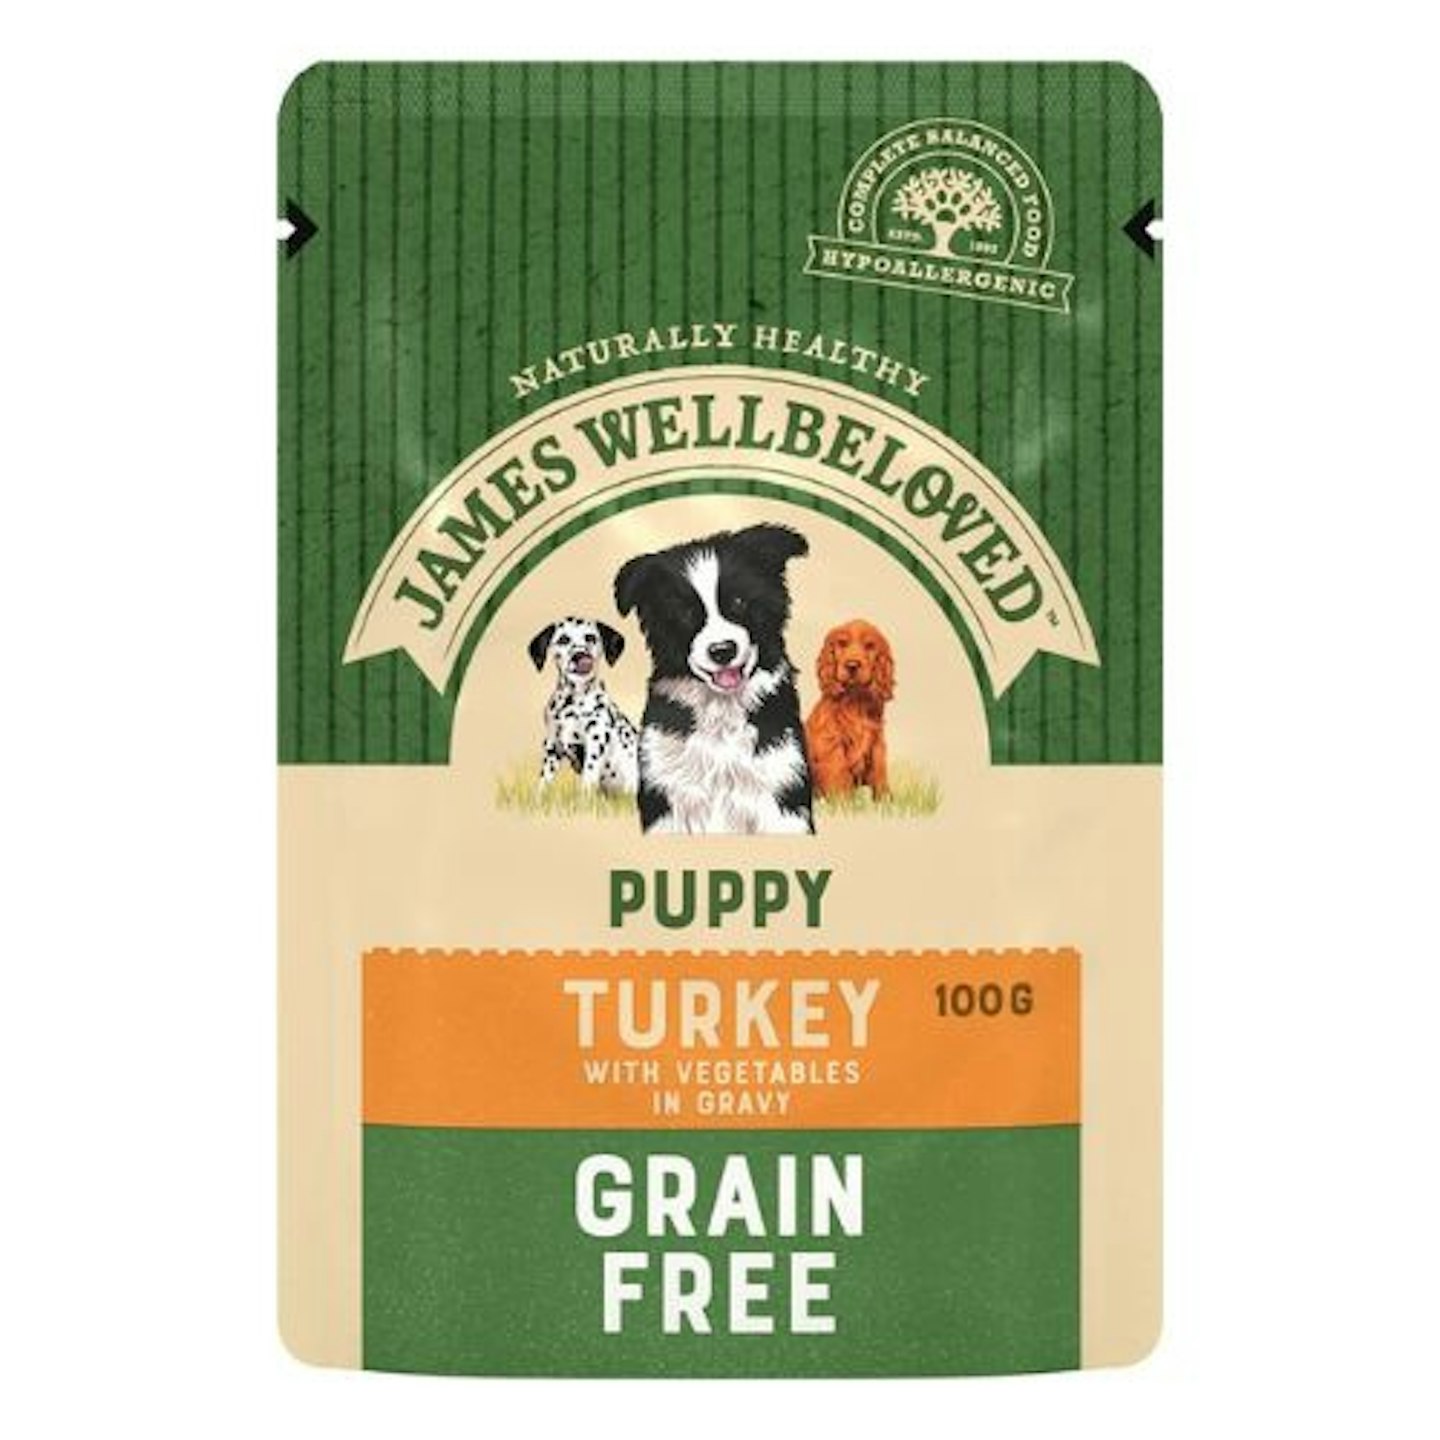  James Wellbeloved Puppy Grain Free Turkey in Gravy 12 Pouches, Hypoallergenic We